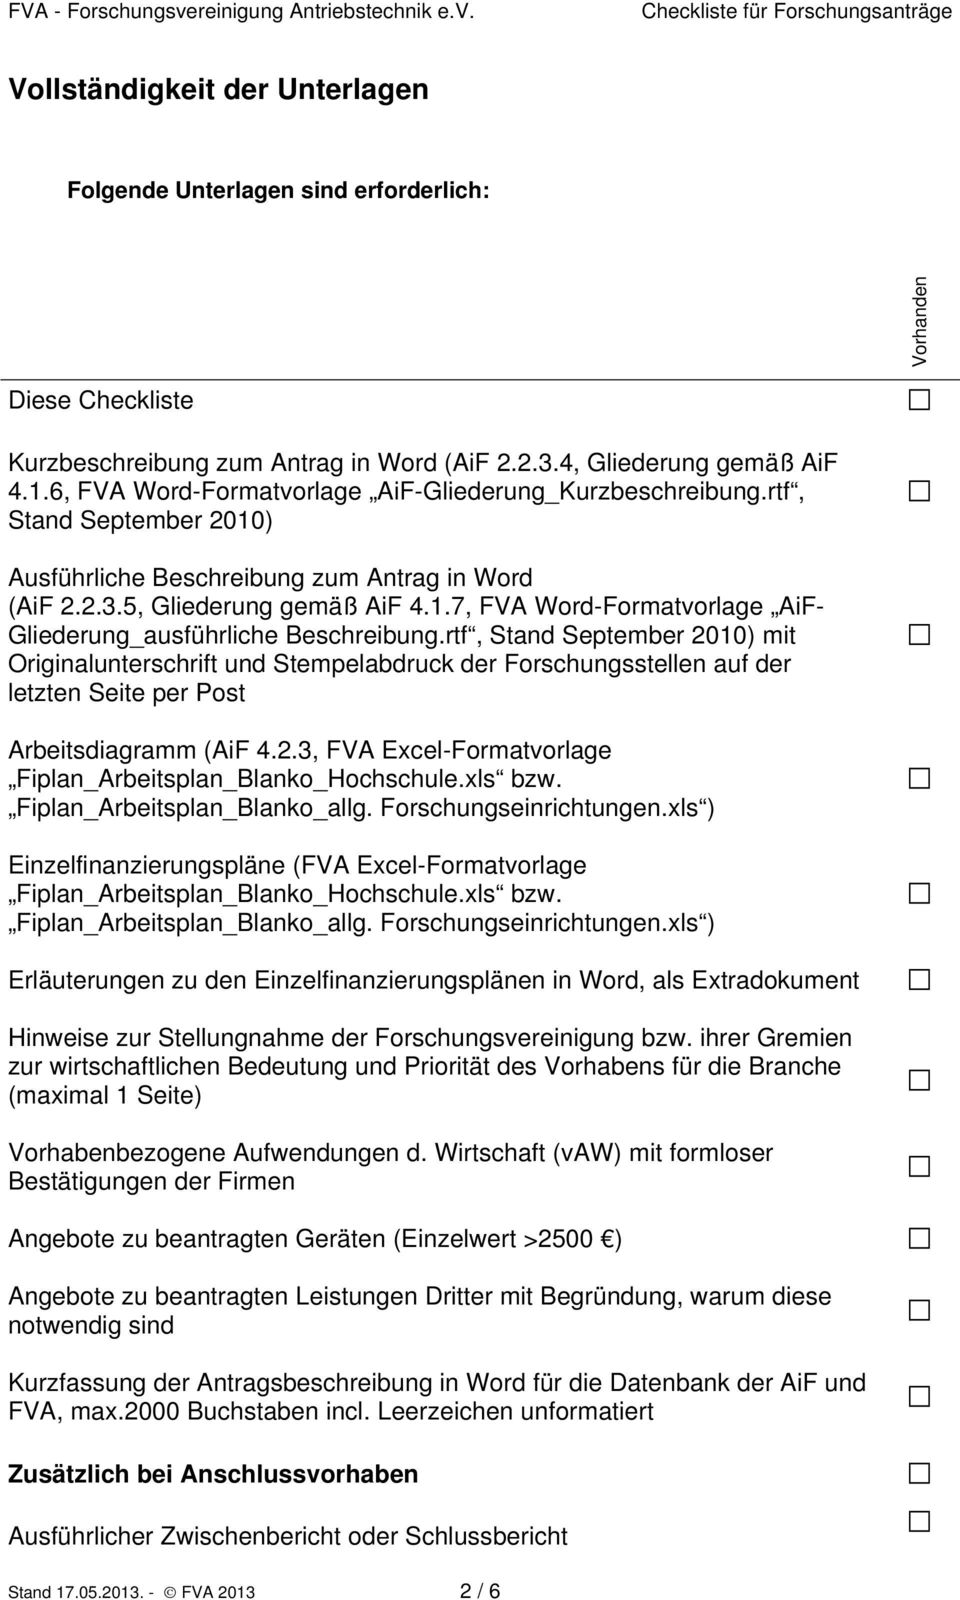 rtf, Stand September 2010) mit Originalunterschrift und Stempelabdruck der Forschungsstellen auf der letzten Seite per Post Arbeitsdiagramm (AiF 4.2.3, FVA Excel-Formatvorlage Fiplan_Arbeitsplan_Blanko_Hochschule.